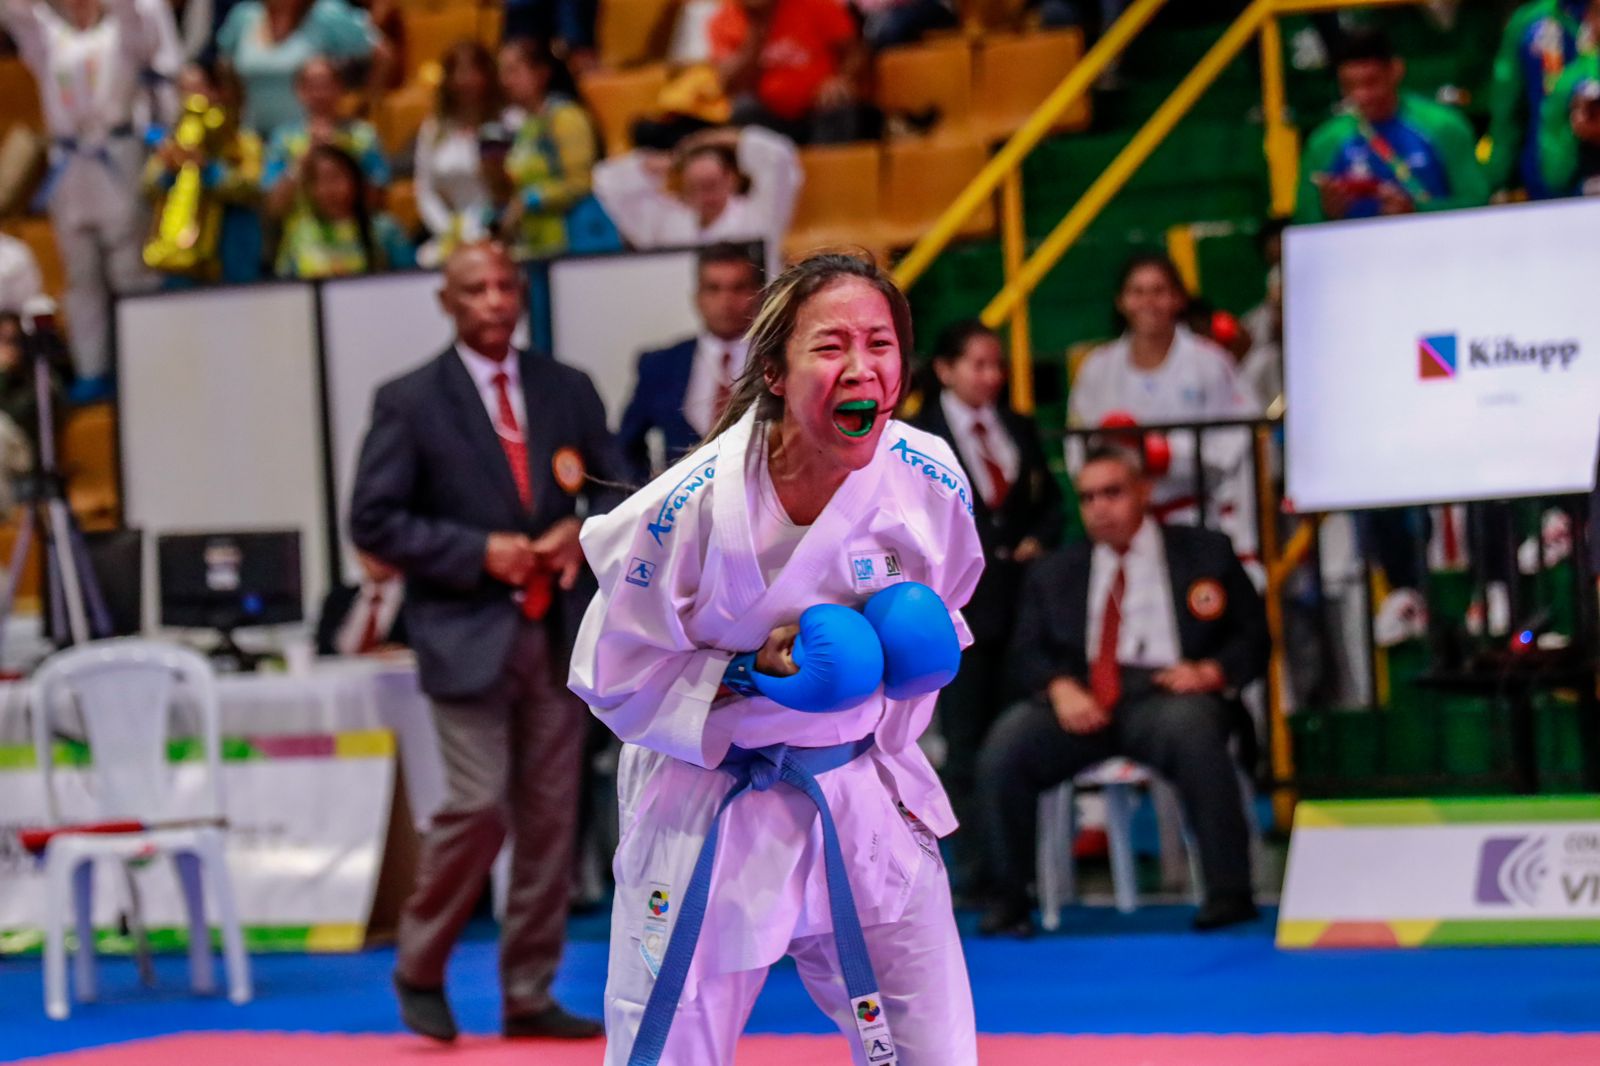 El deporte por buen camino en Córdoba: cuatro karatecas convocados a representar a Colombia en Centroamericanos